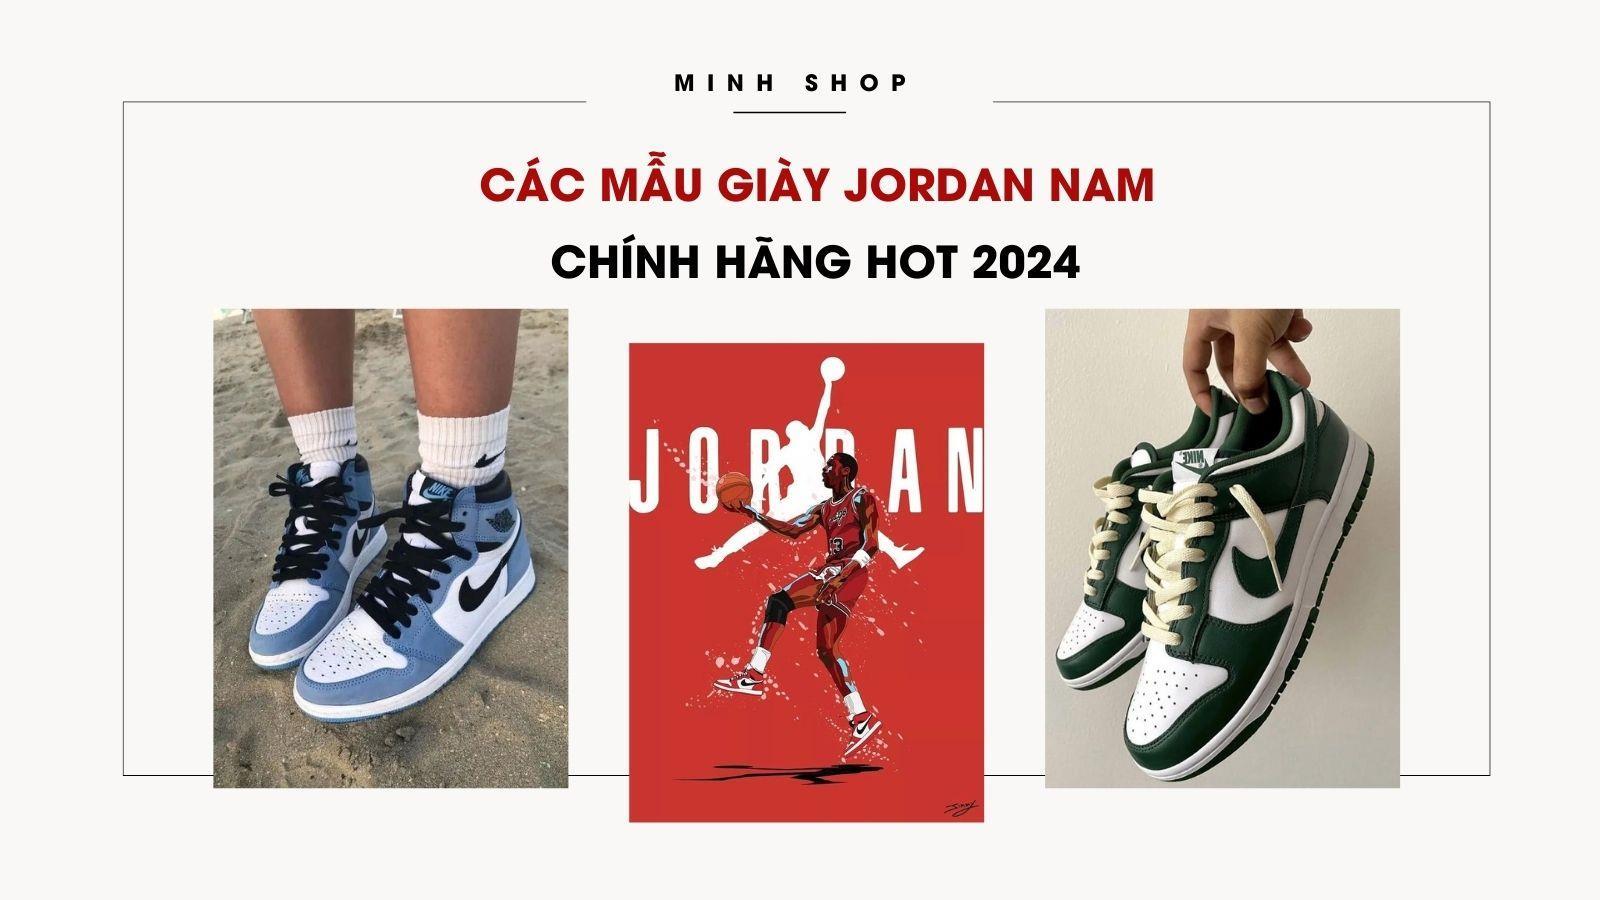 Minhshop.vn - Các Mẫu Giày Jordan Nam Chính Hãng HOT 2024